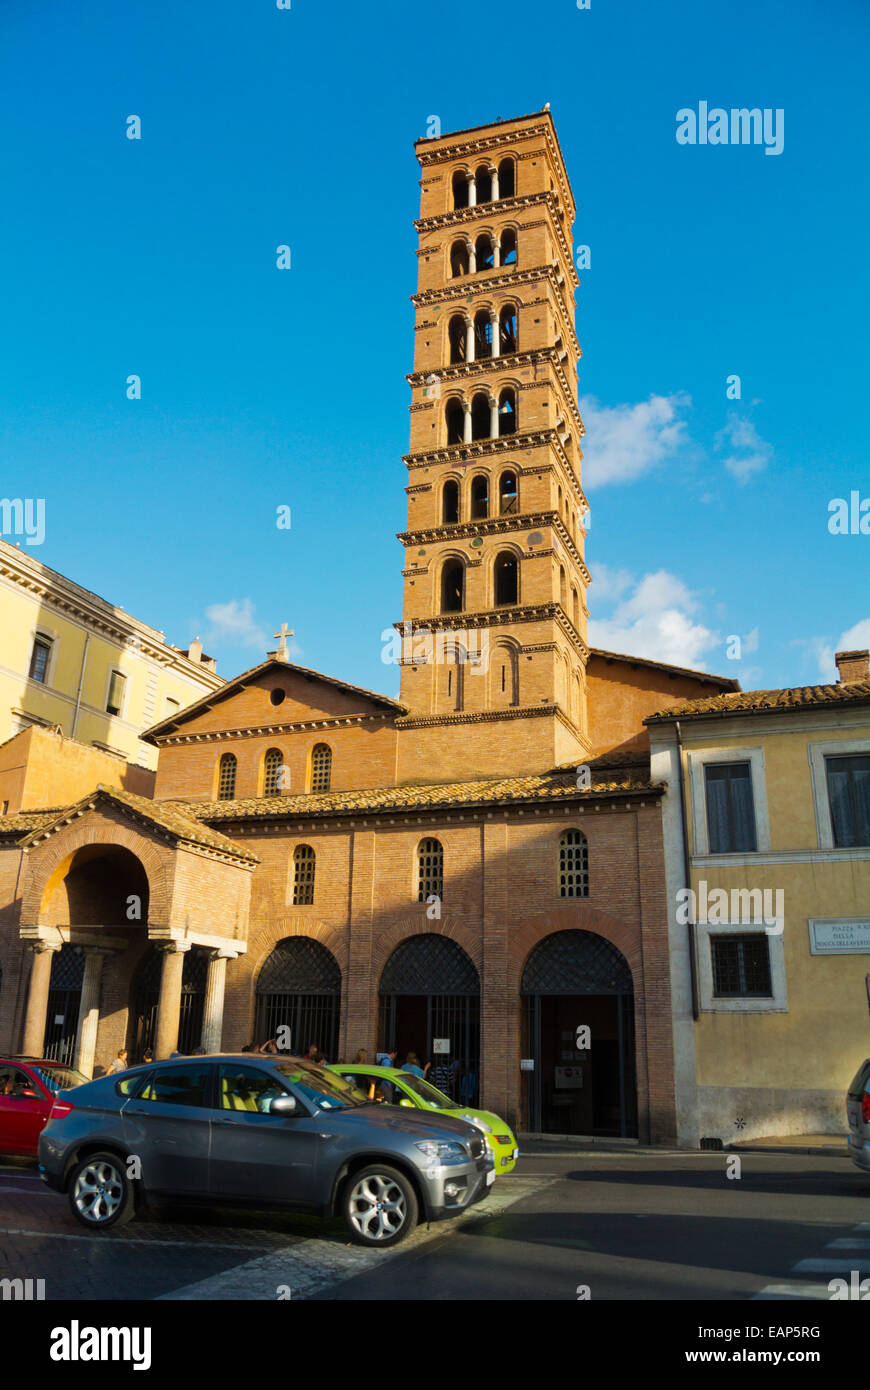 Santa Maria in Cosmedin church, Piazza Bocca della Verità, Rome, Italy Stock Photo